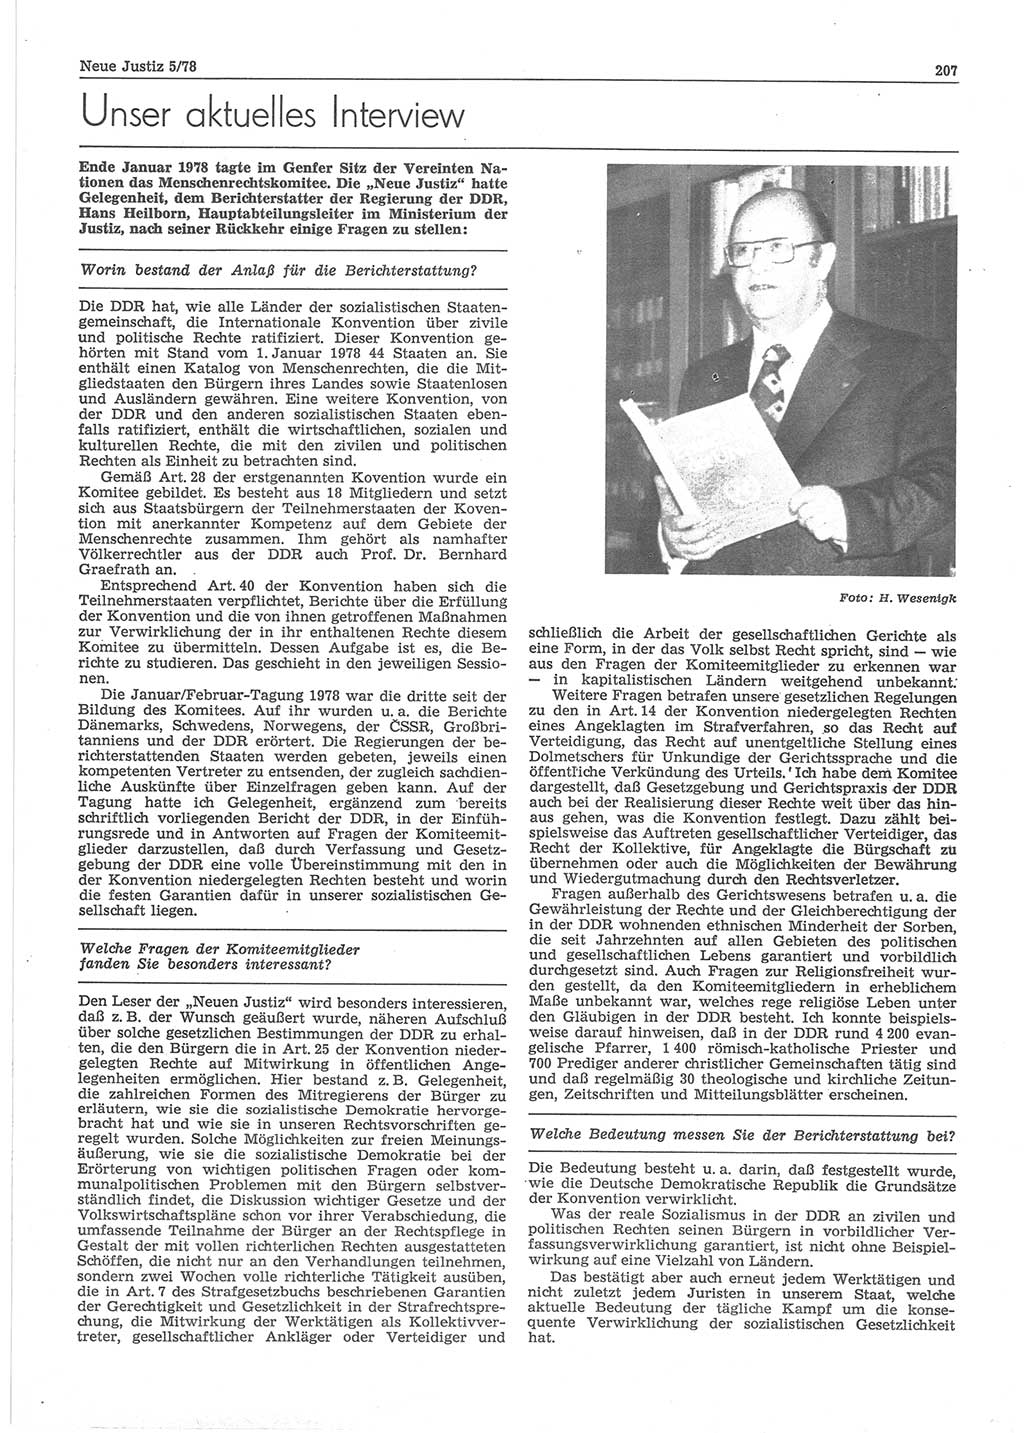 Neue Justiz (NJ), Zeitschrift für sozialistisches Recht und Gesetzlichkeit [Deutsche Demokratische Republik (DDR)], 32. Jahrgang 1978, Seite 207 (NJ DDR 1978, S. 207)